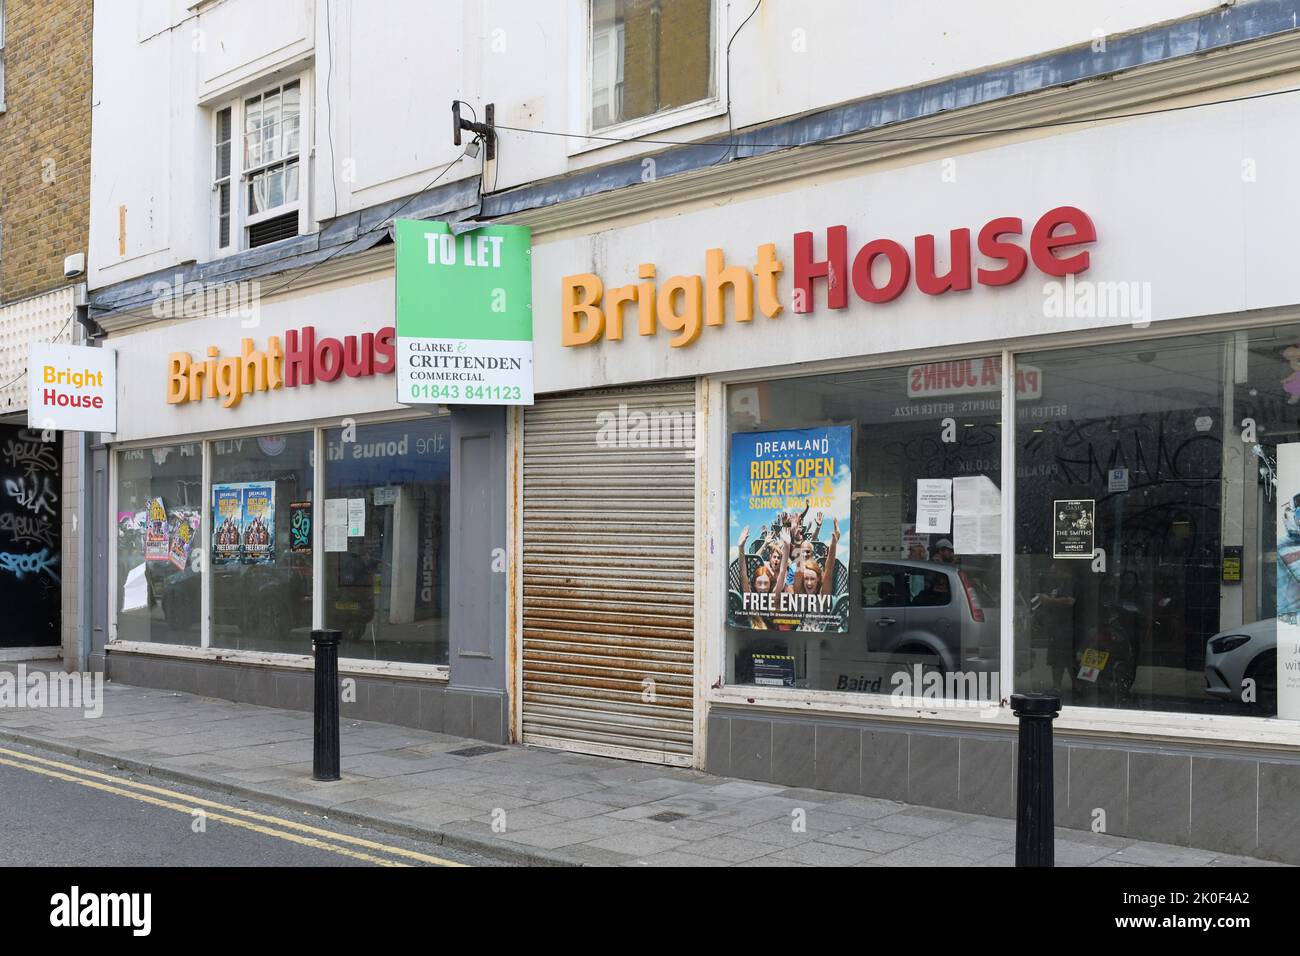 Magasin de Brightthouse fermé avec pour laisser l'enseigne à l'extérieur, Margate, Kent, Angleterre, Royaume-Uni Banque D'Images